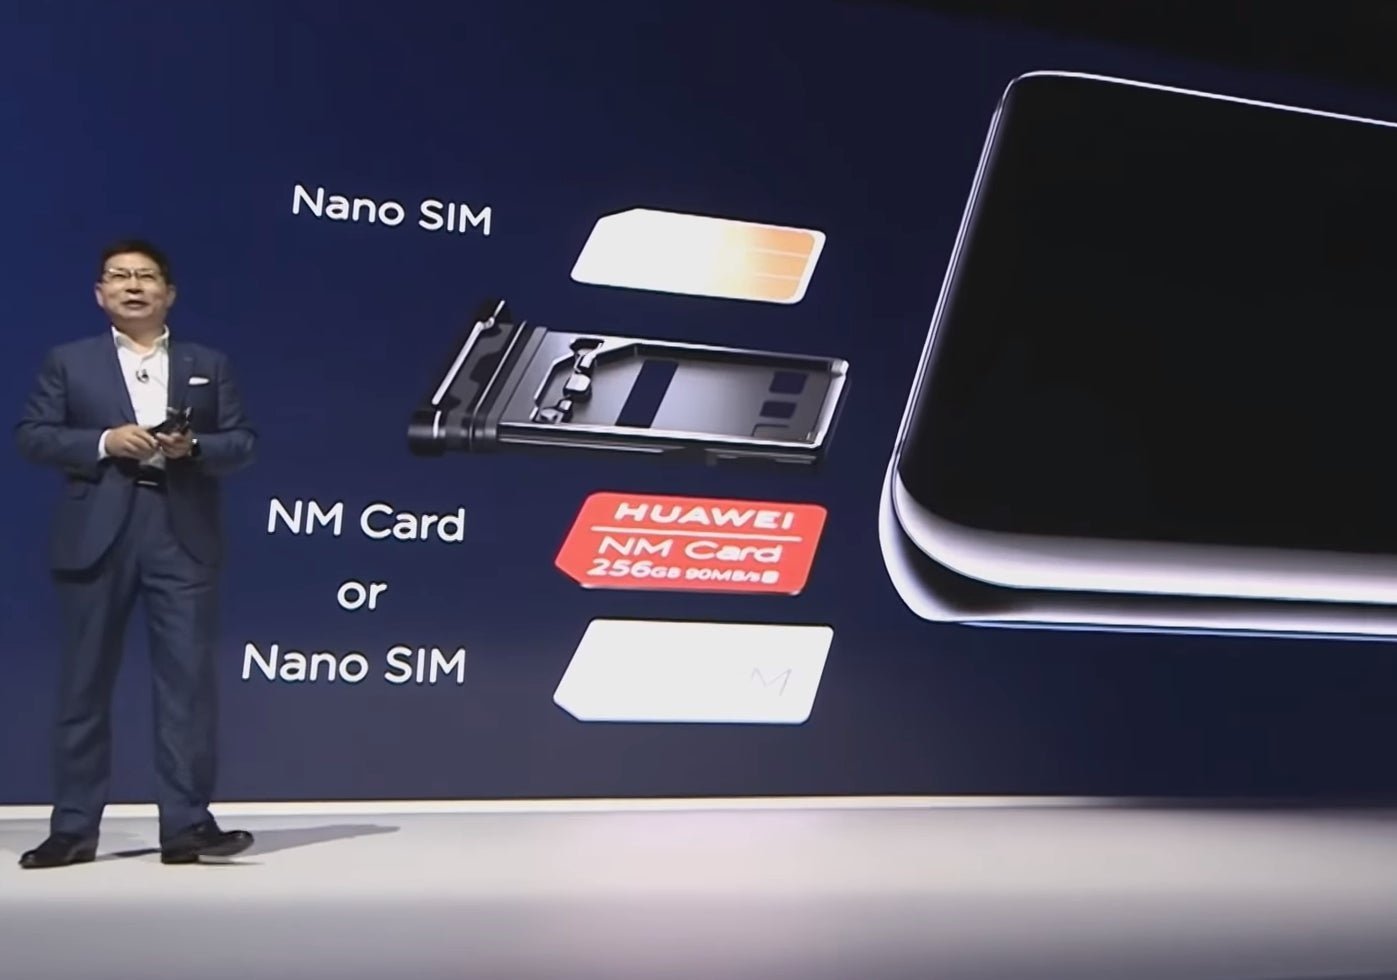 Qué es la "Nano SD" de Huawei y por qué quieren hacer de ella el nuevo estándar